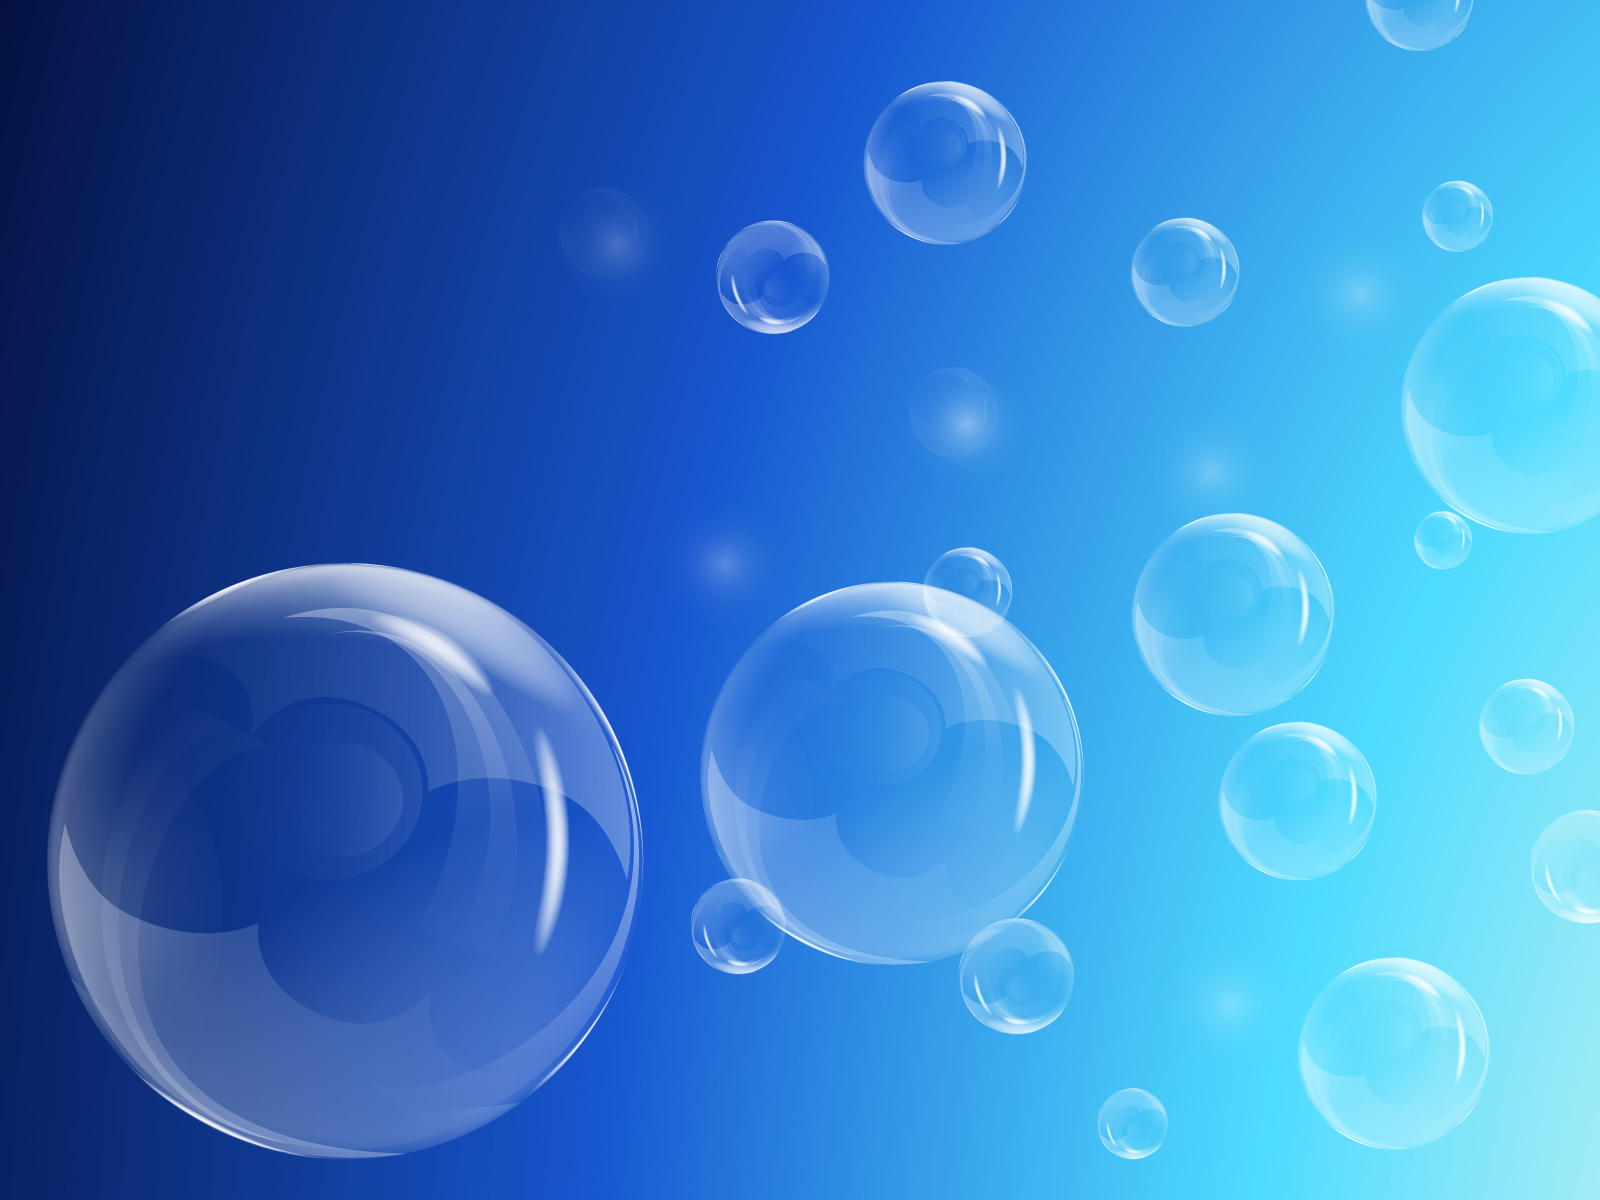 Bubbles Background